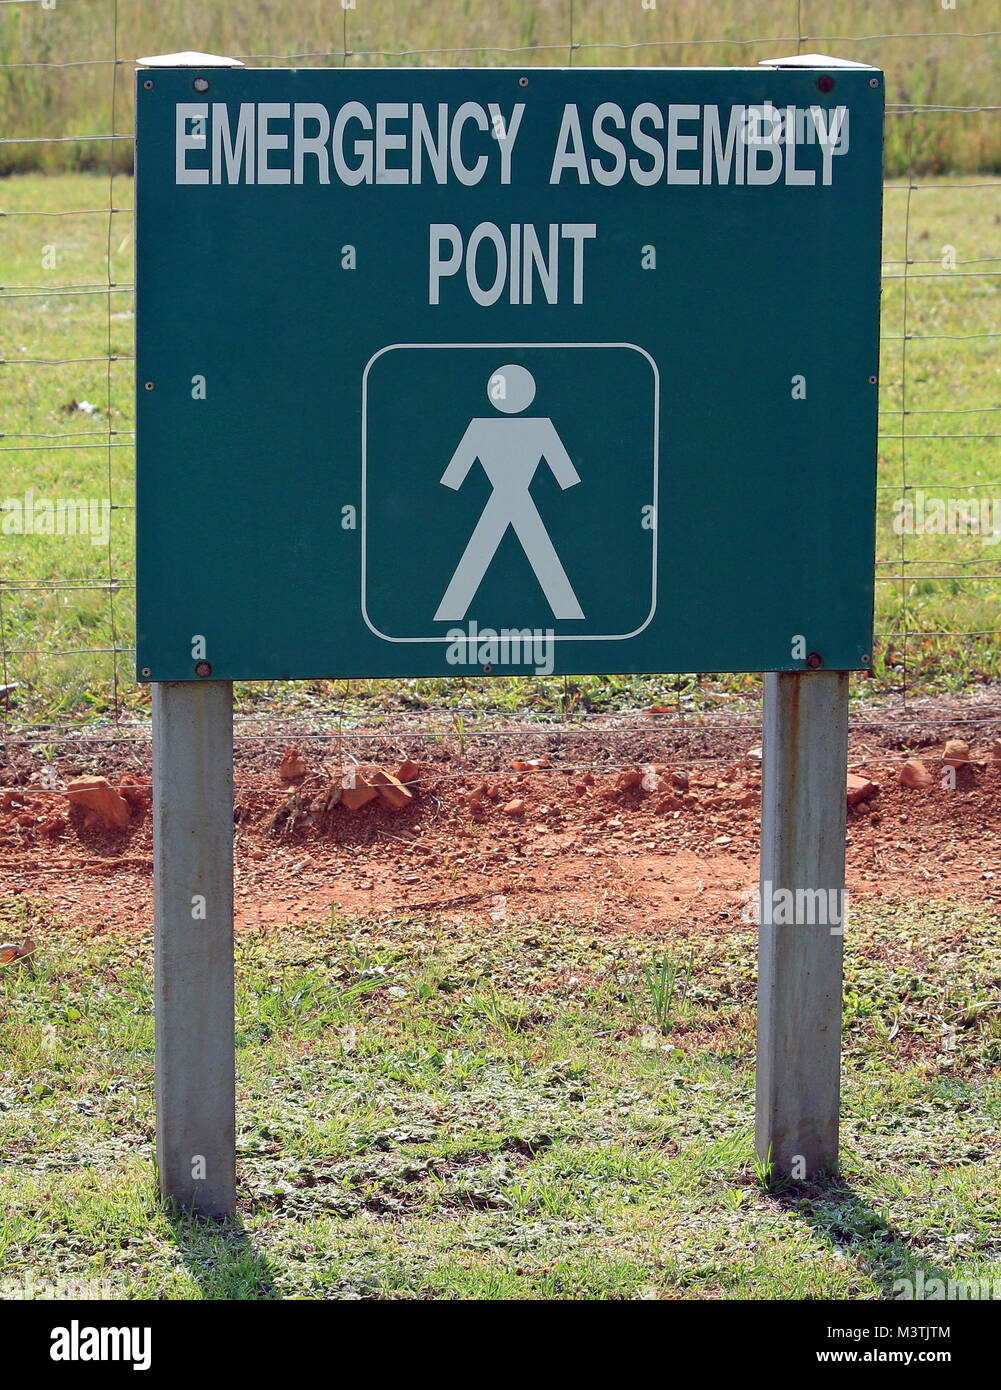 Not-sammelplatz Hinweisschild in weißer Farbe auf grünem Hintergrund fixiert auf zwei Pole zu direkte Menschen, wo im Notfall zu gehen Stockfoto